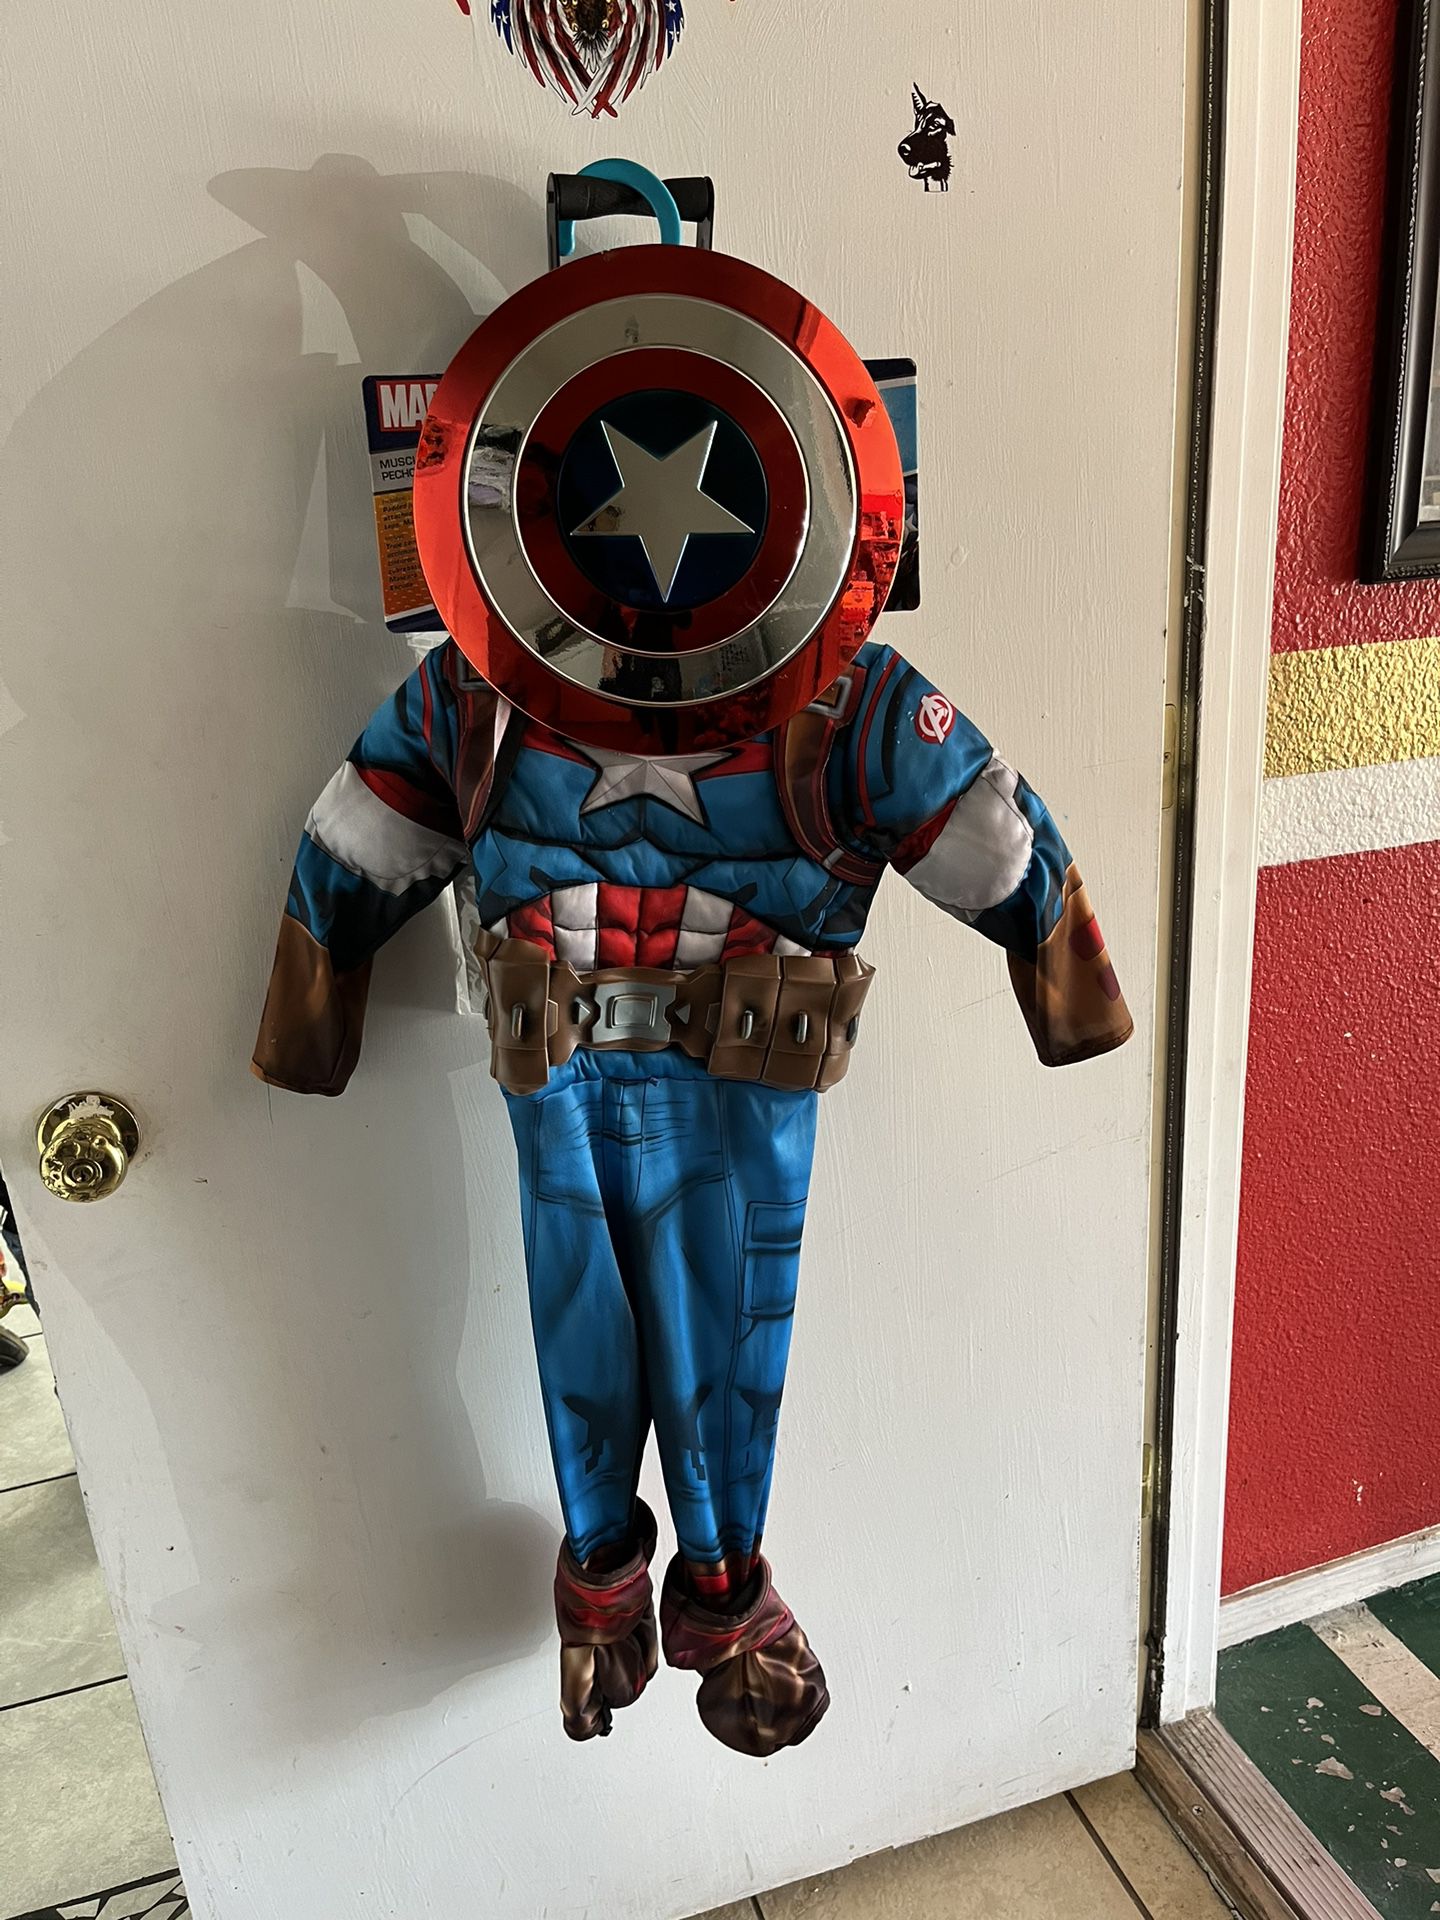 Captain America $10